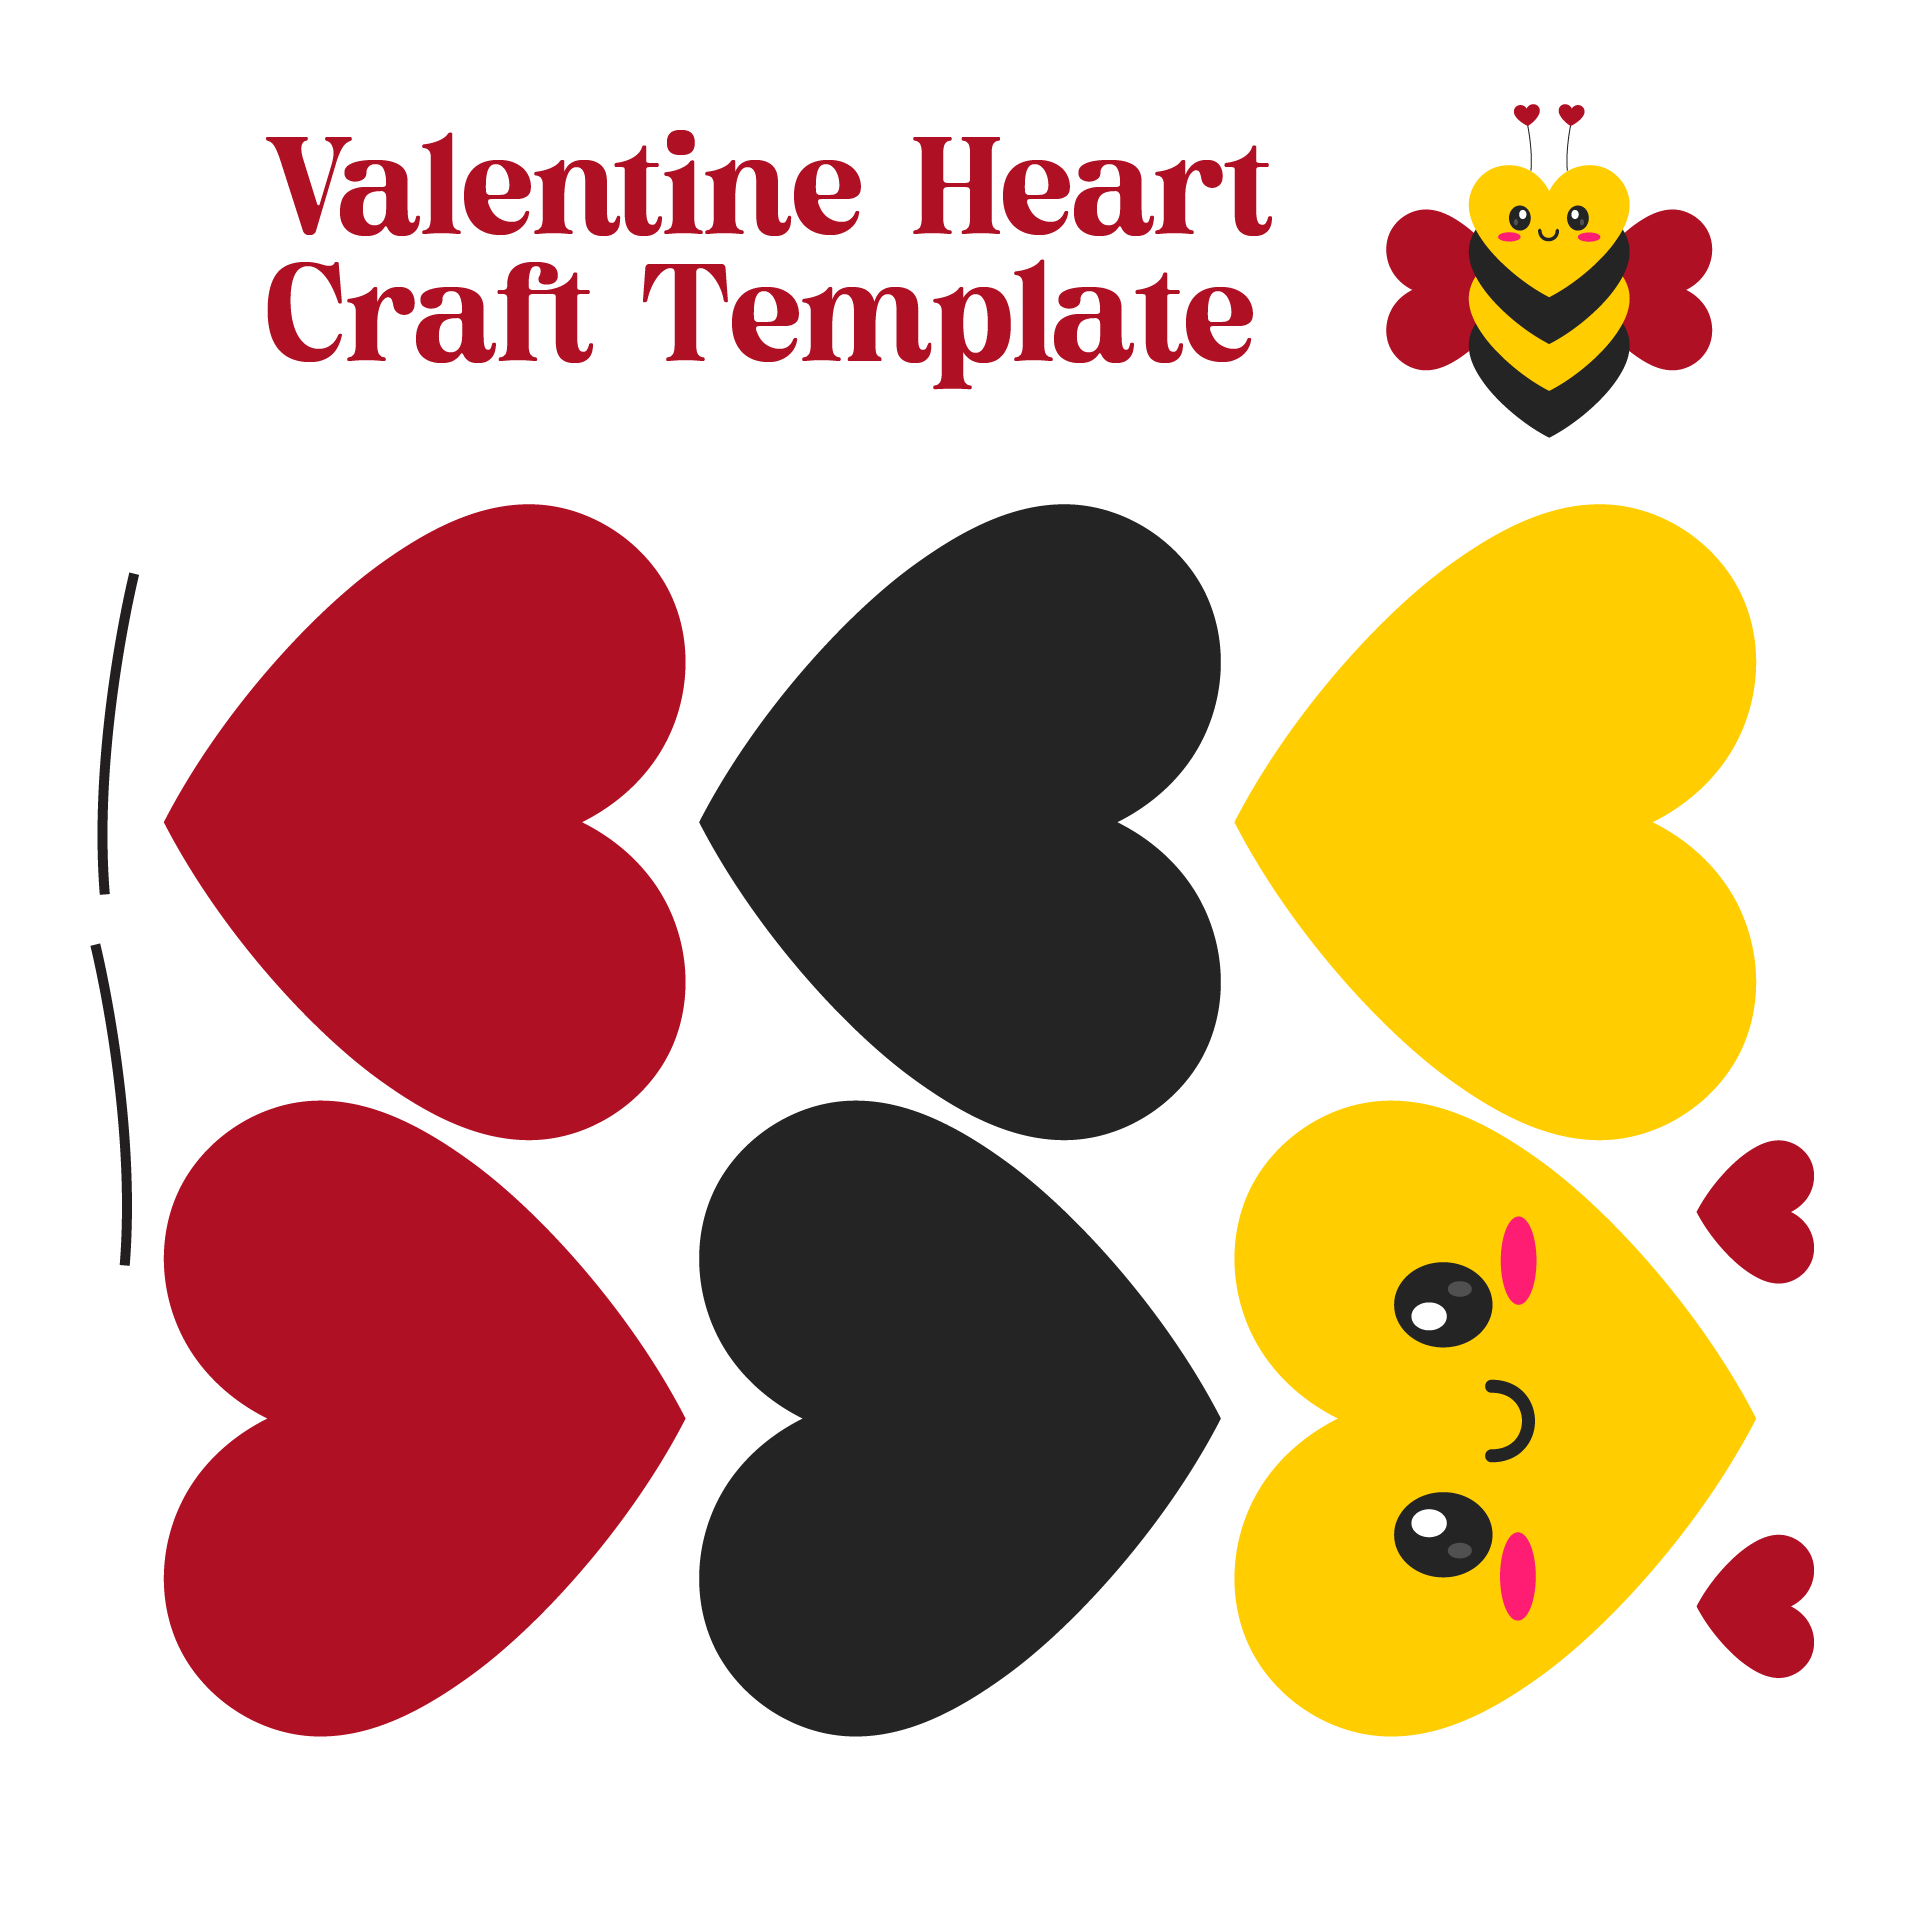 Valentine Heart Craft Template